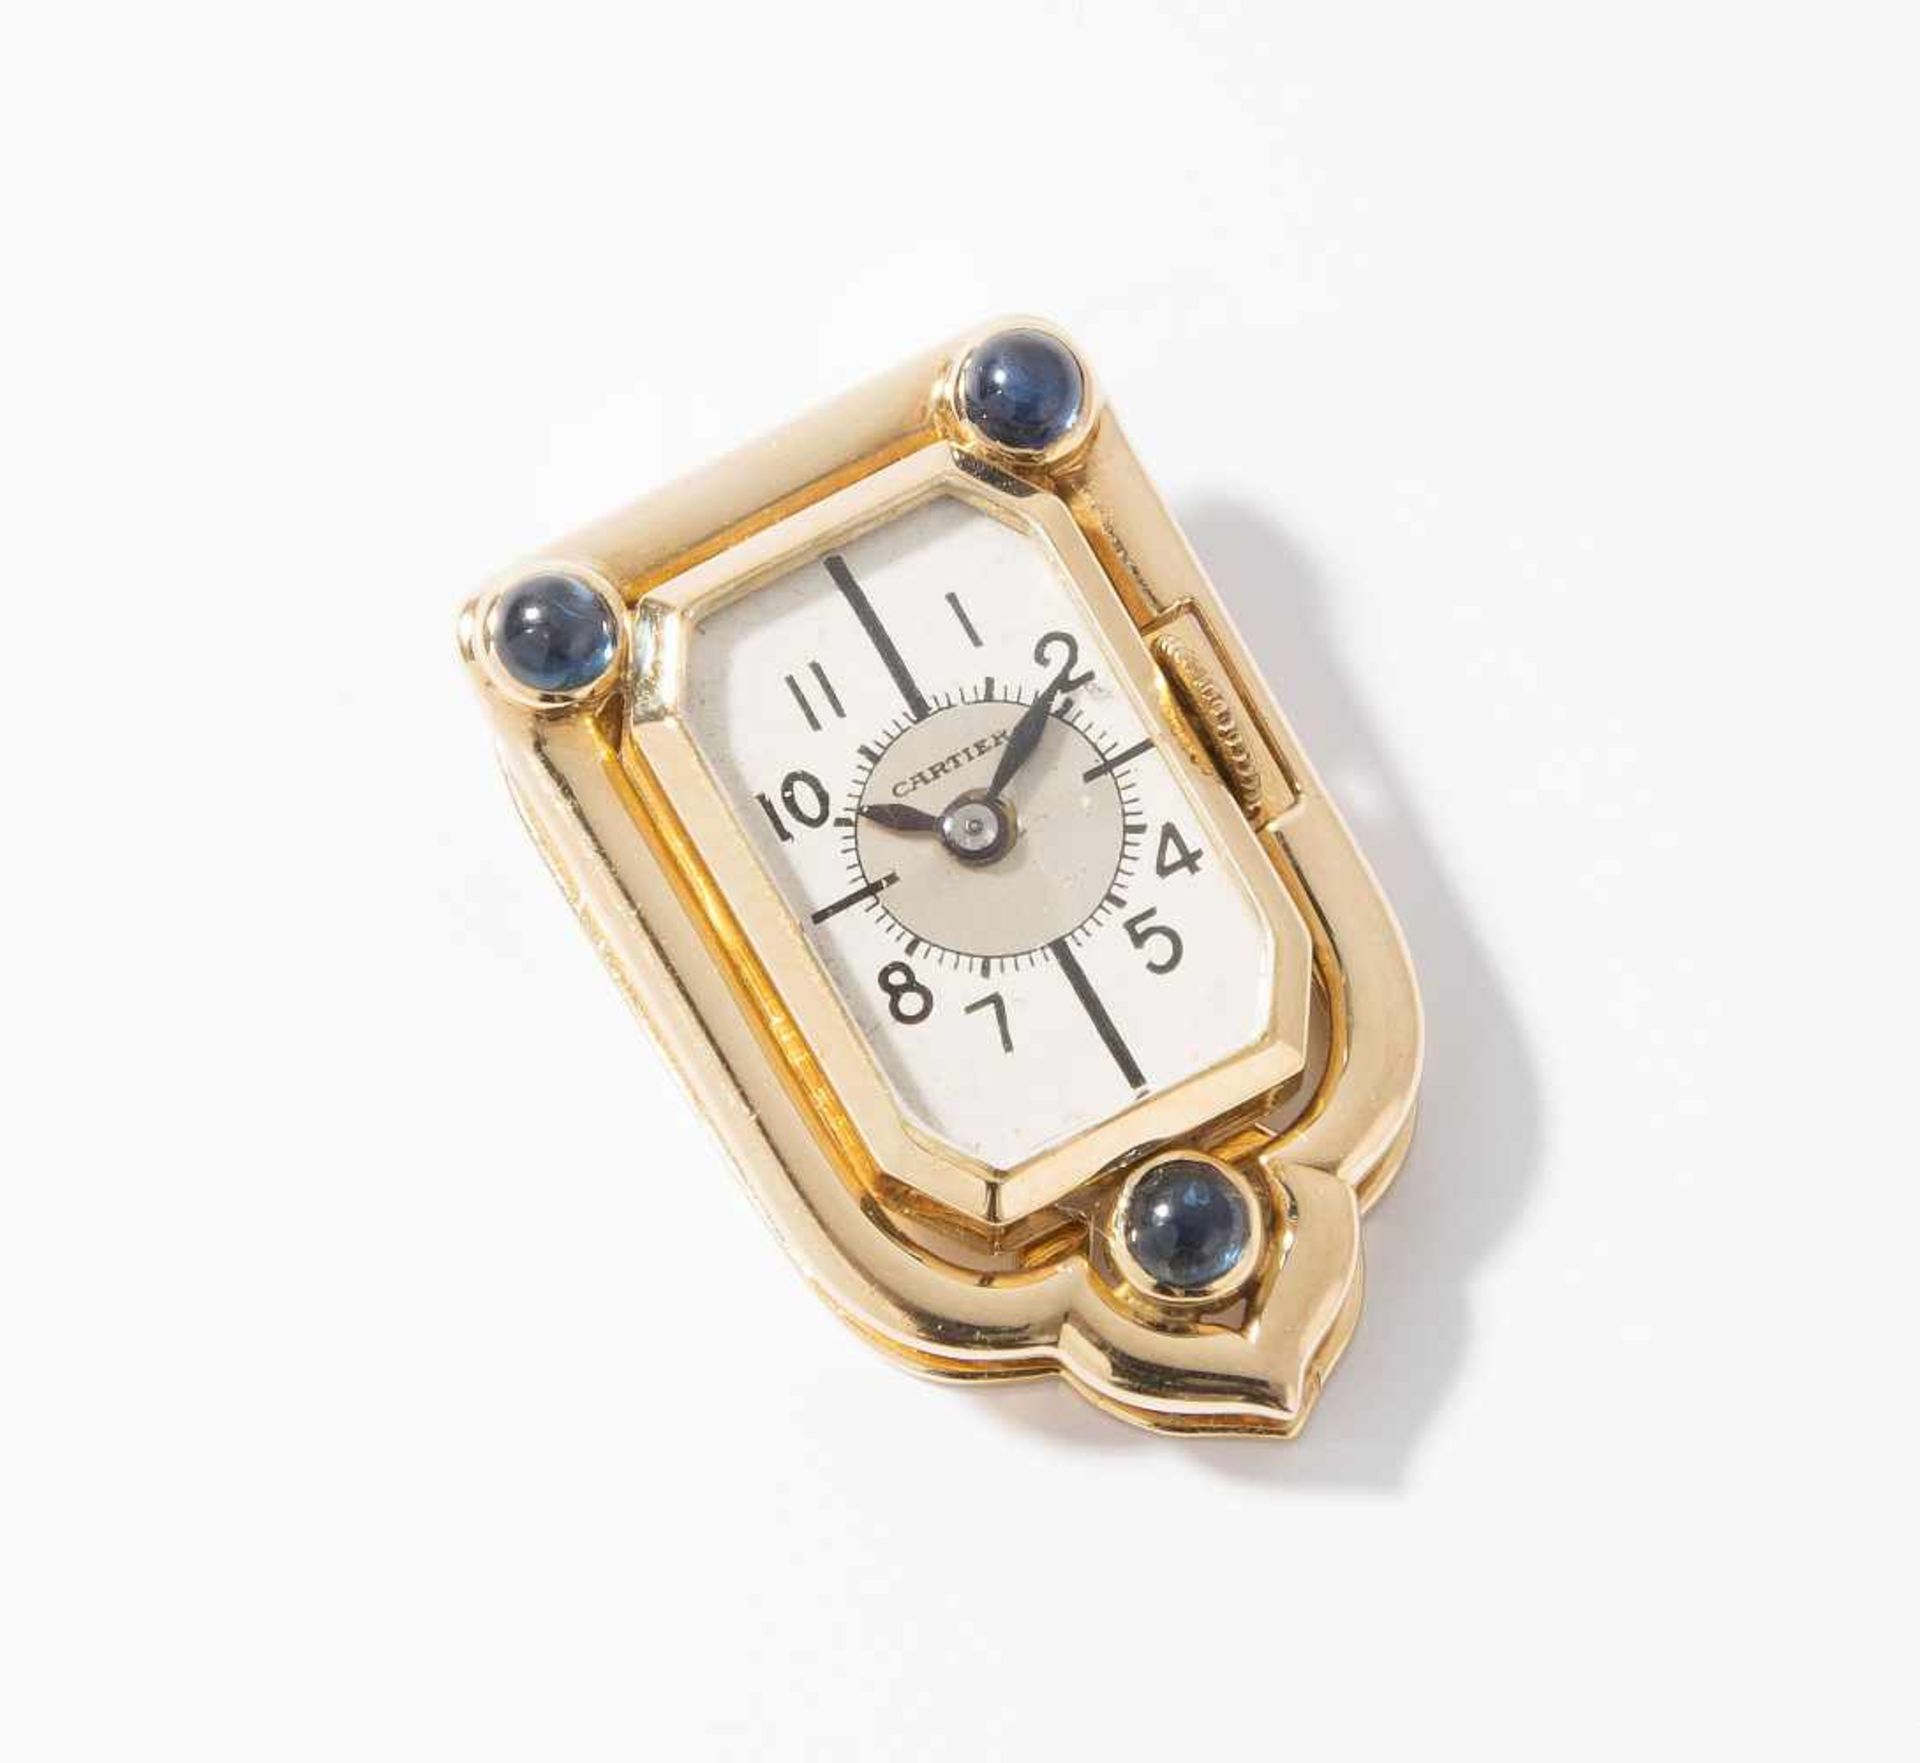 Cartier Saphir-Uhrenclip1940er Jahre. Werk und Gehäuse von James Schulz, NY. 585 Gelbgold. Gehäuse